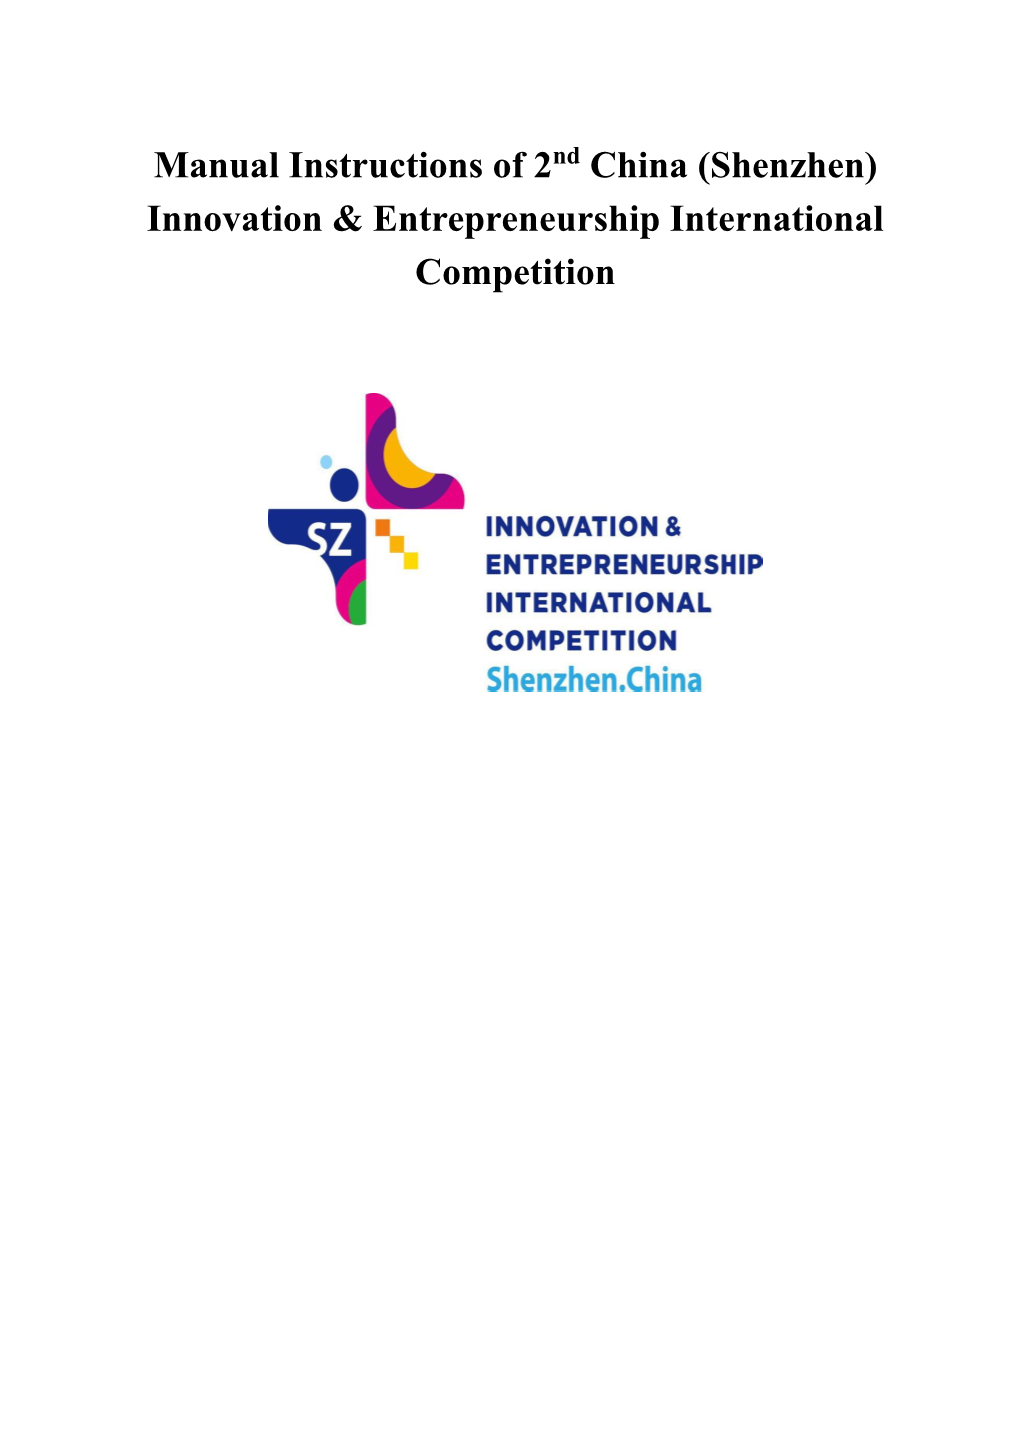 Shenzhen) Innovation & Entrepreneurship International Competition